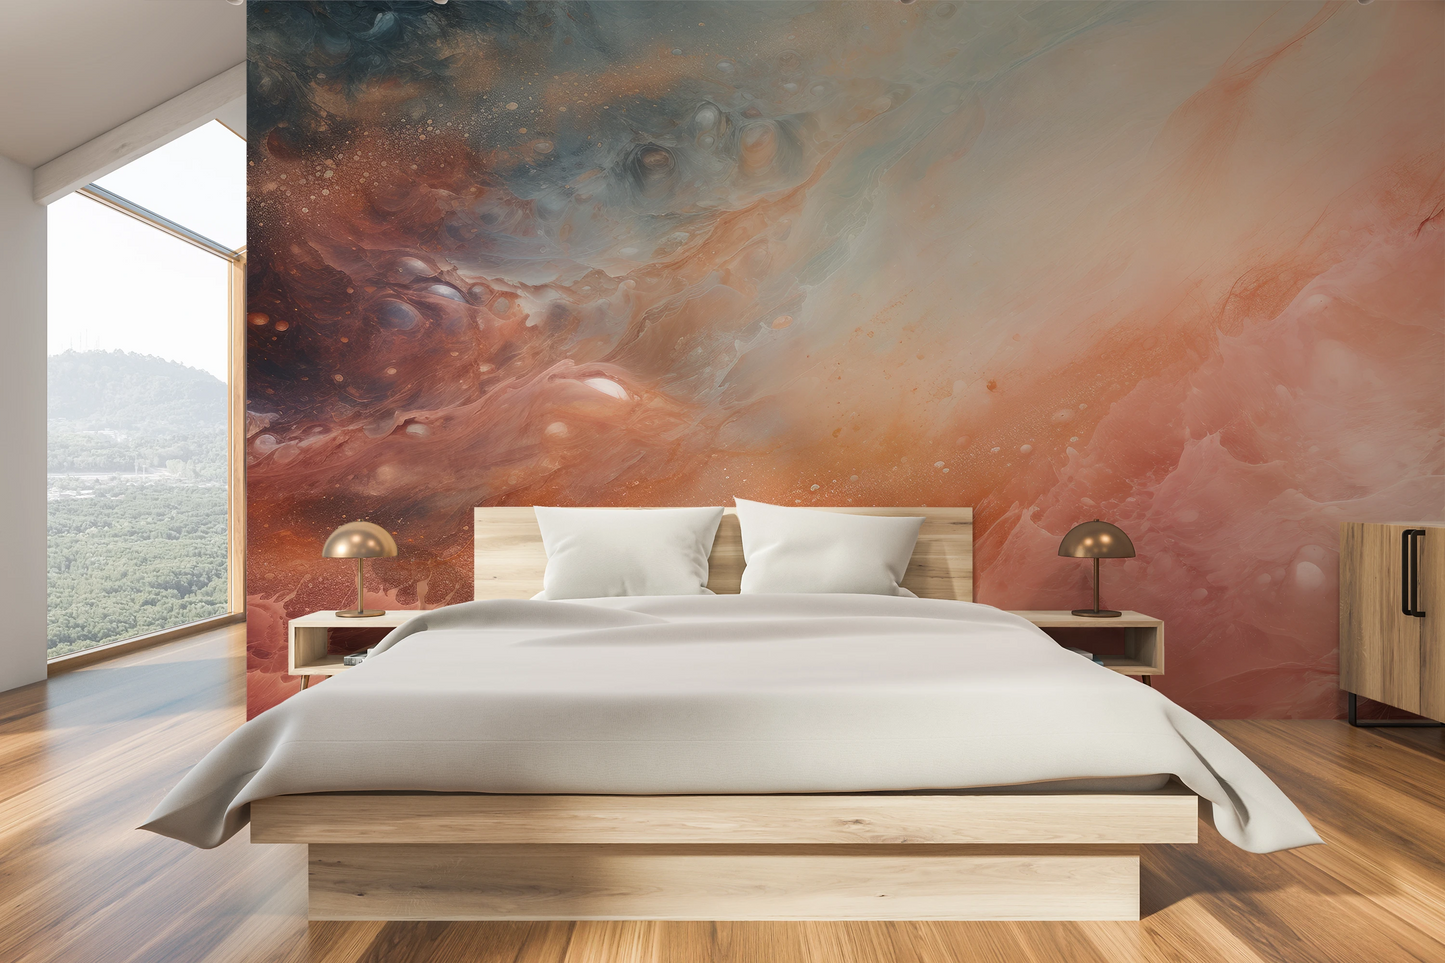 Wzór fototapety artystycznej o nazwie Solar Nebula pokazanej w aranżacji wnętrza.